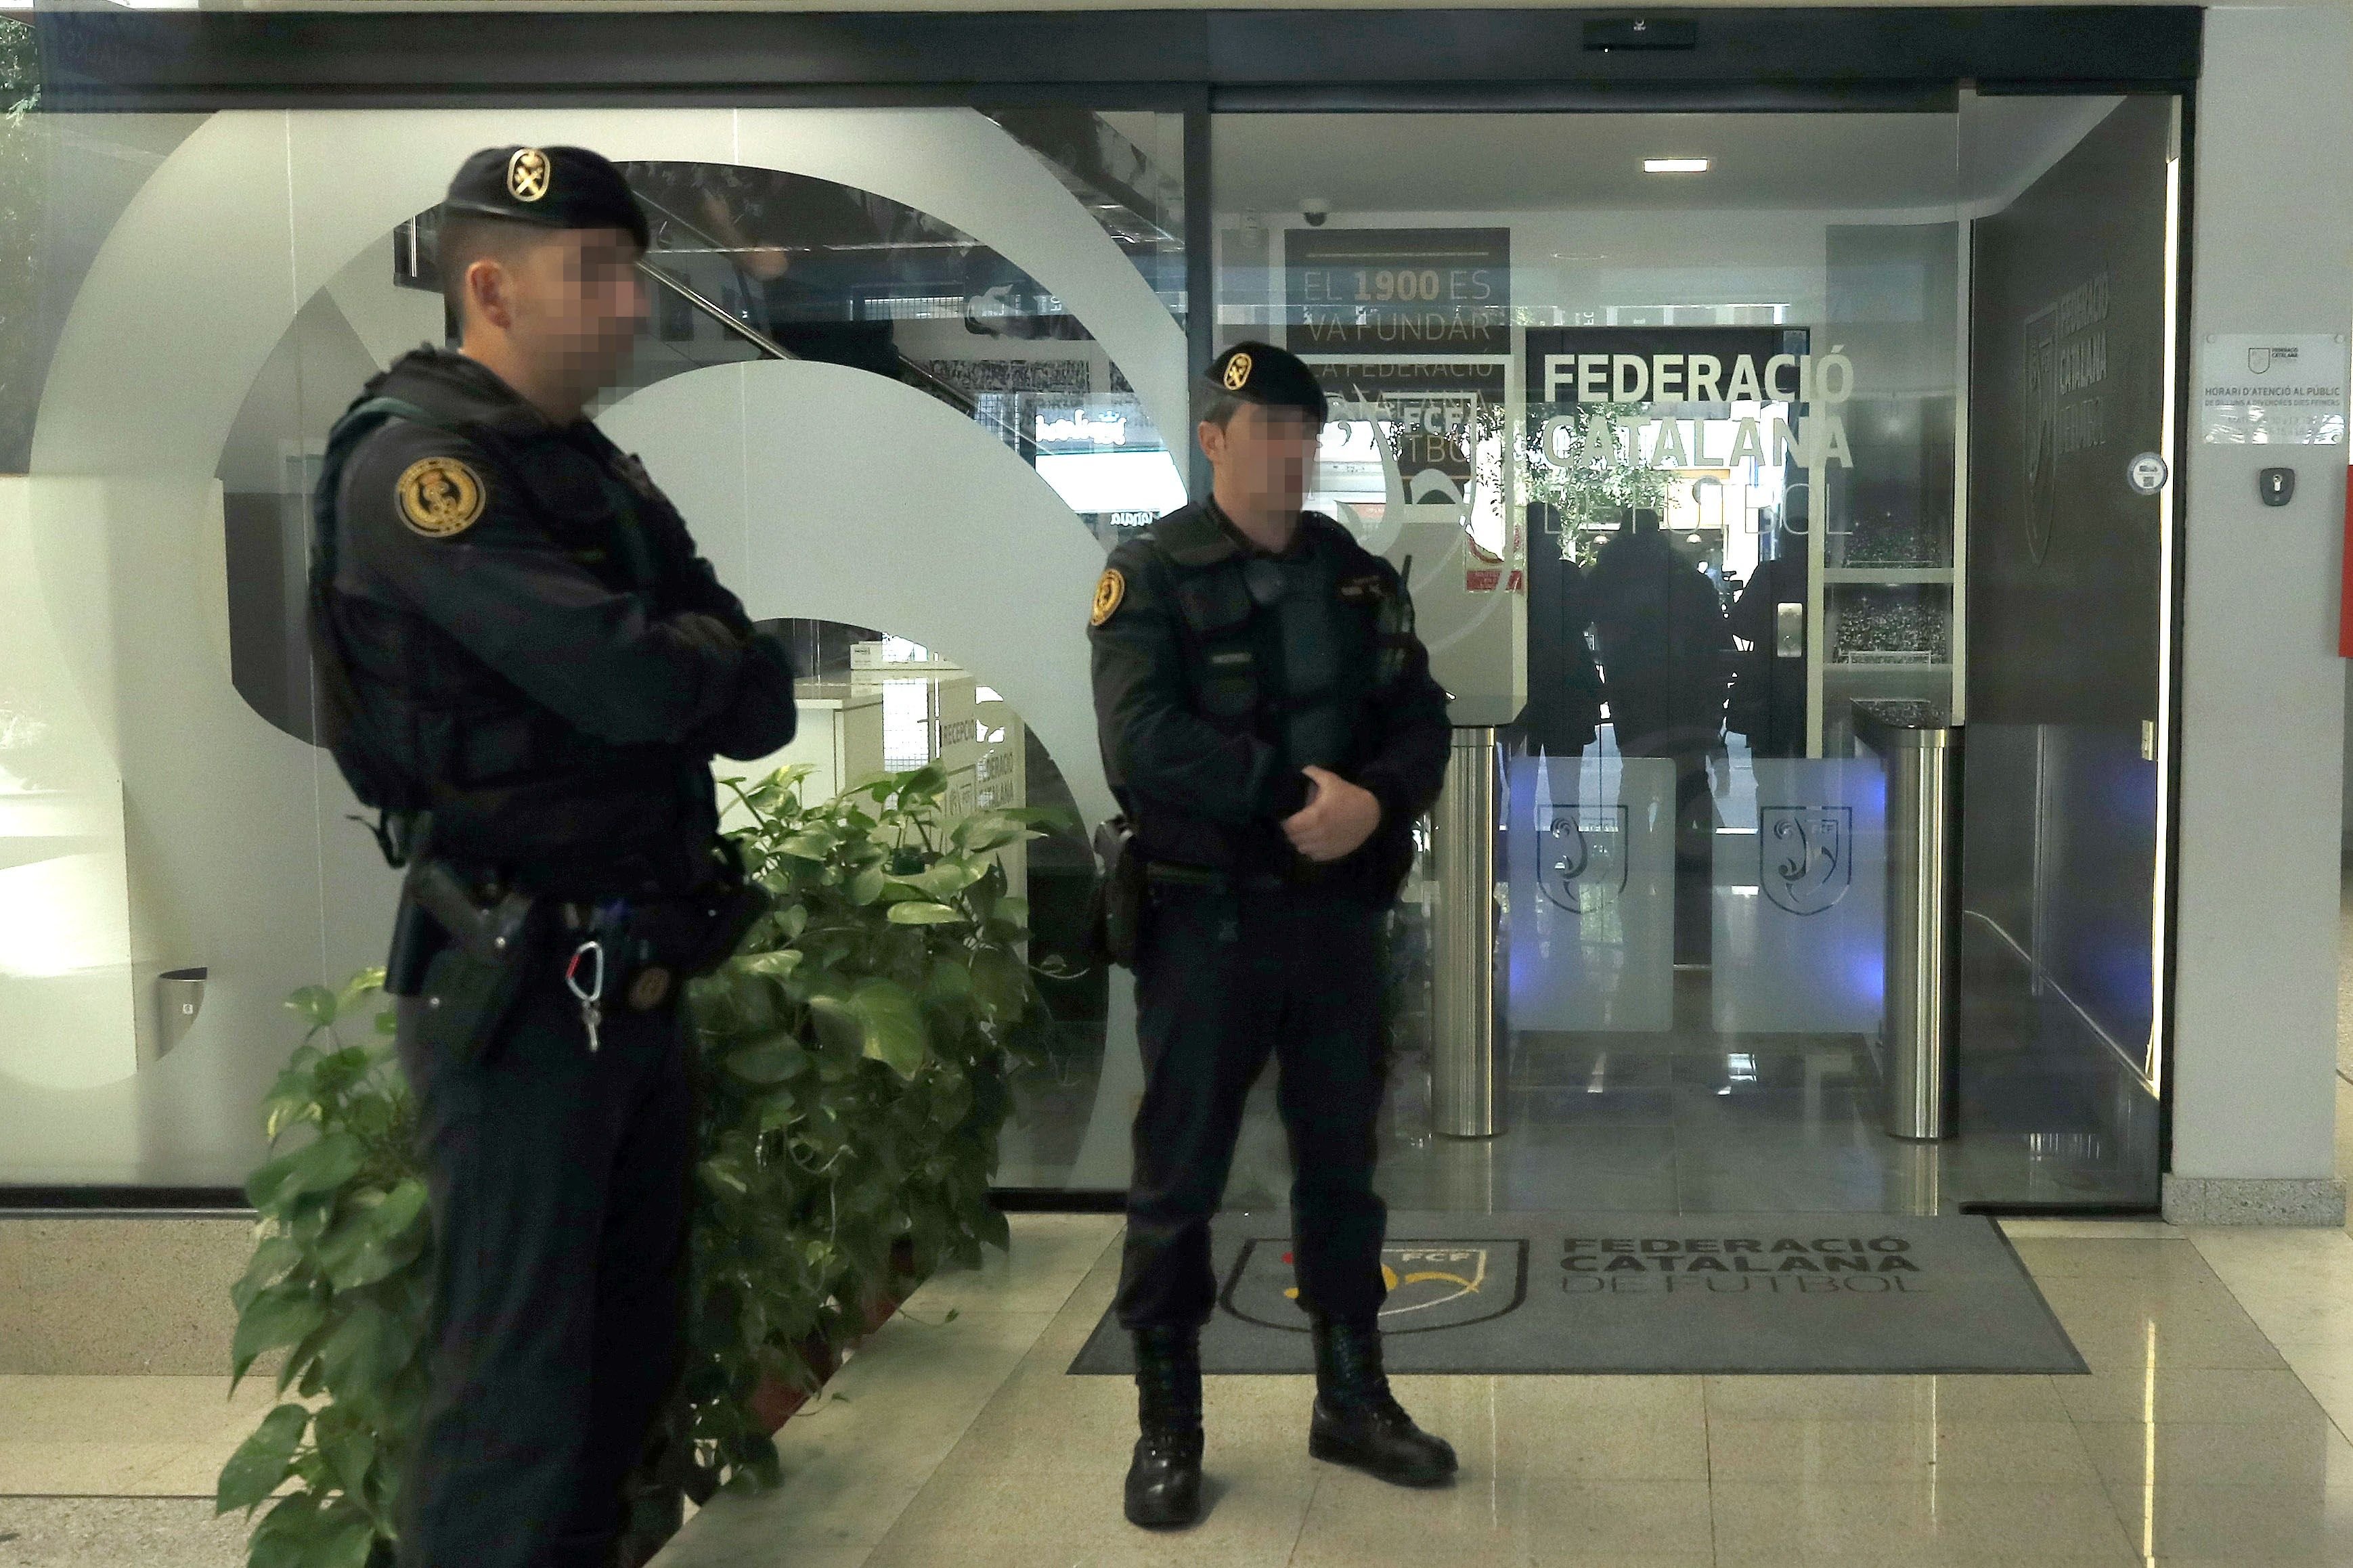 La Federació Catalana de Futbol confirma los registros policiales en su sede